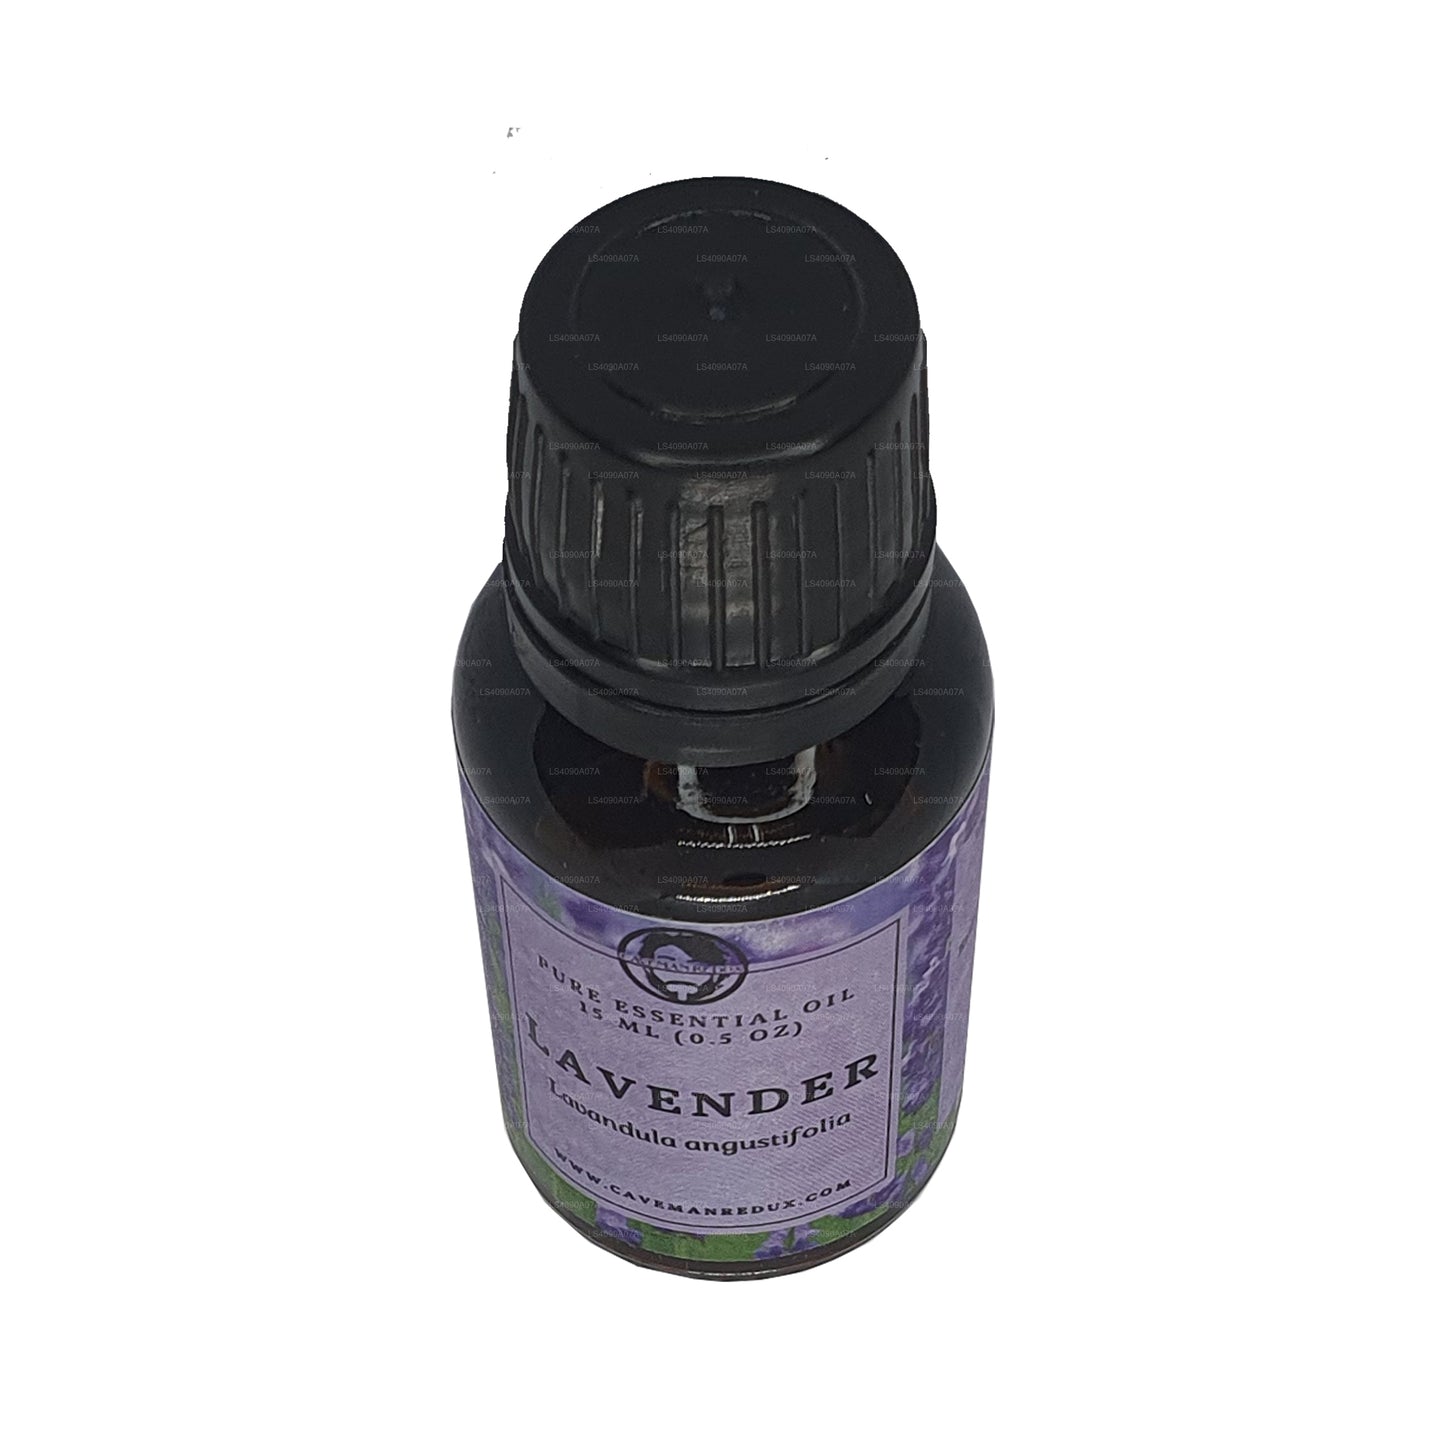 Lakpura lavendel æterisk olie (15 ml)